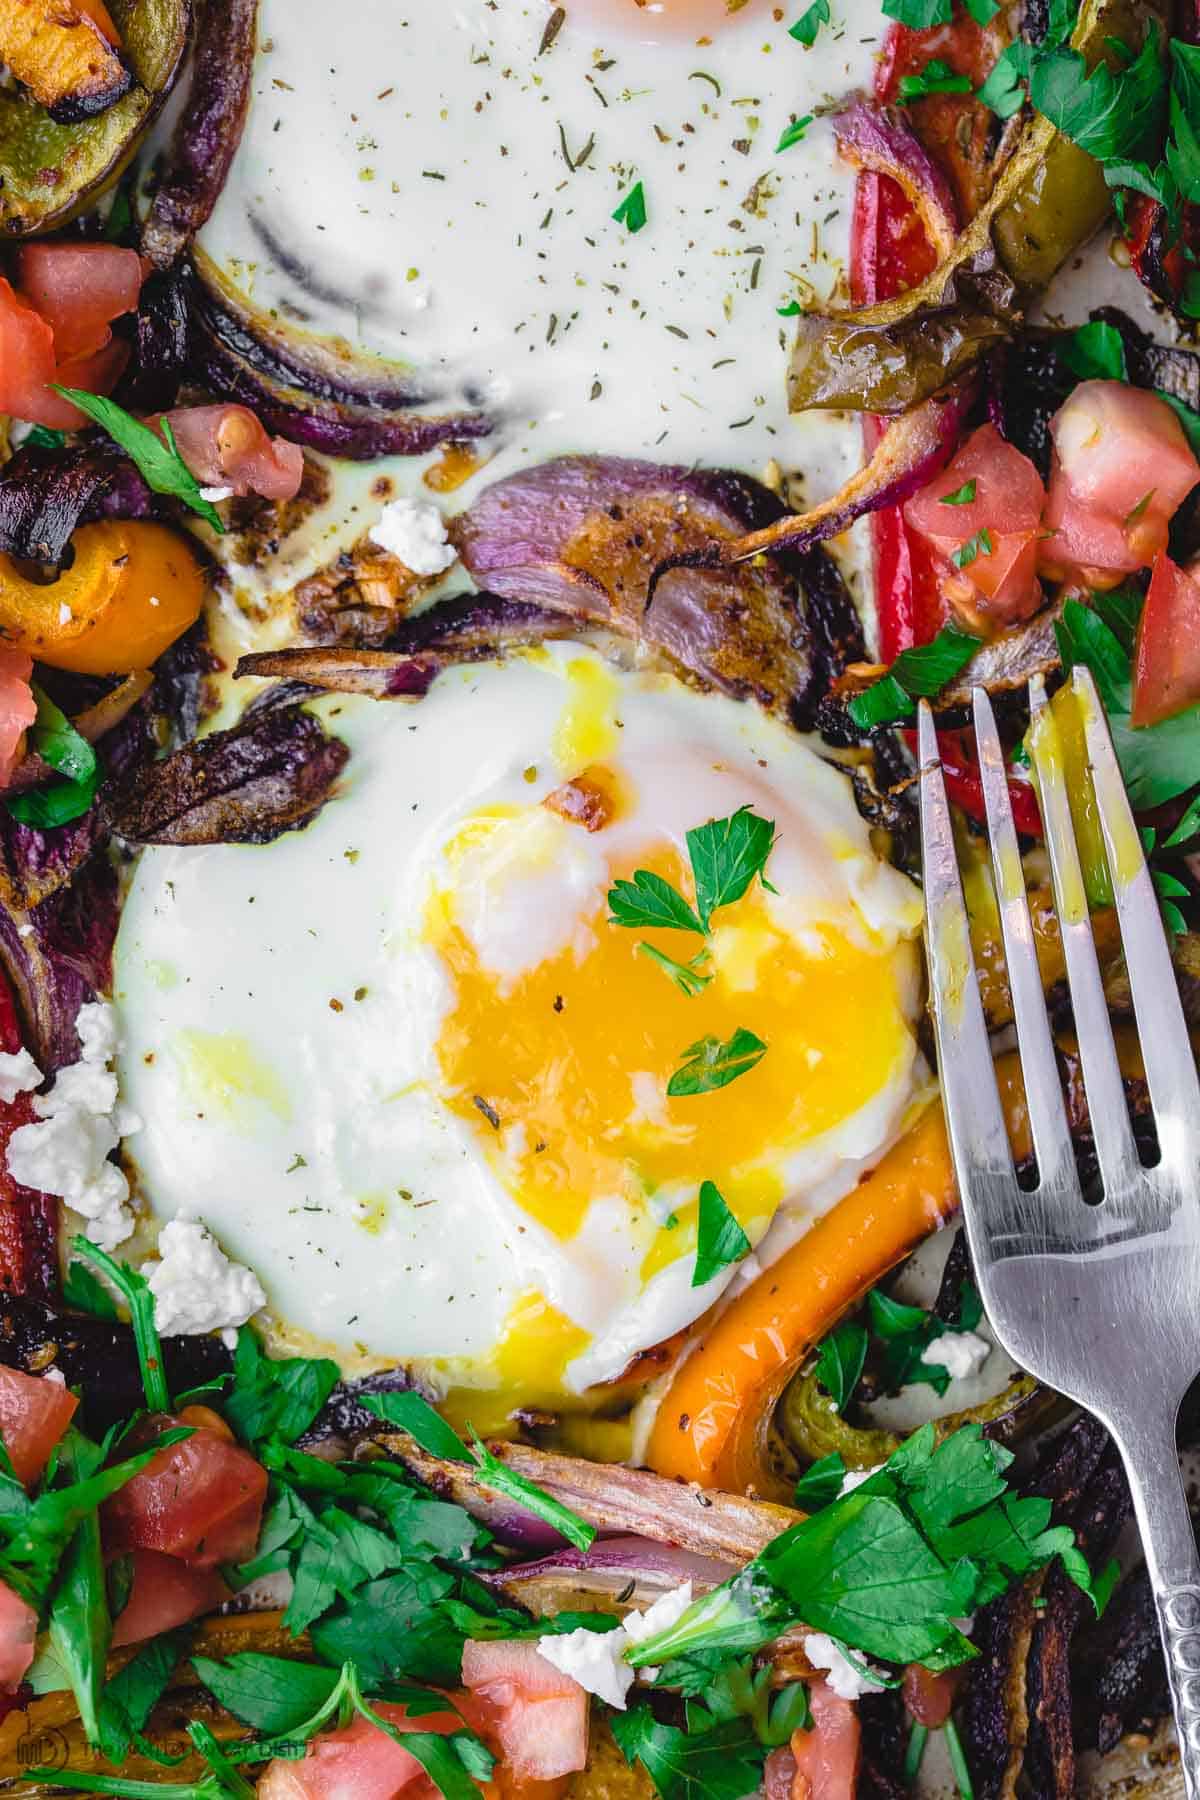 Running egg yoke over roasted veggies on a plate